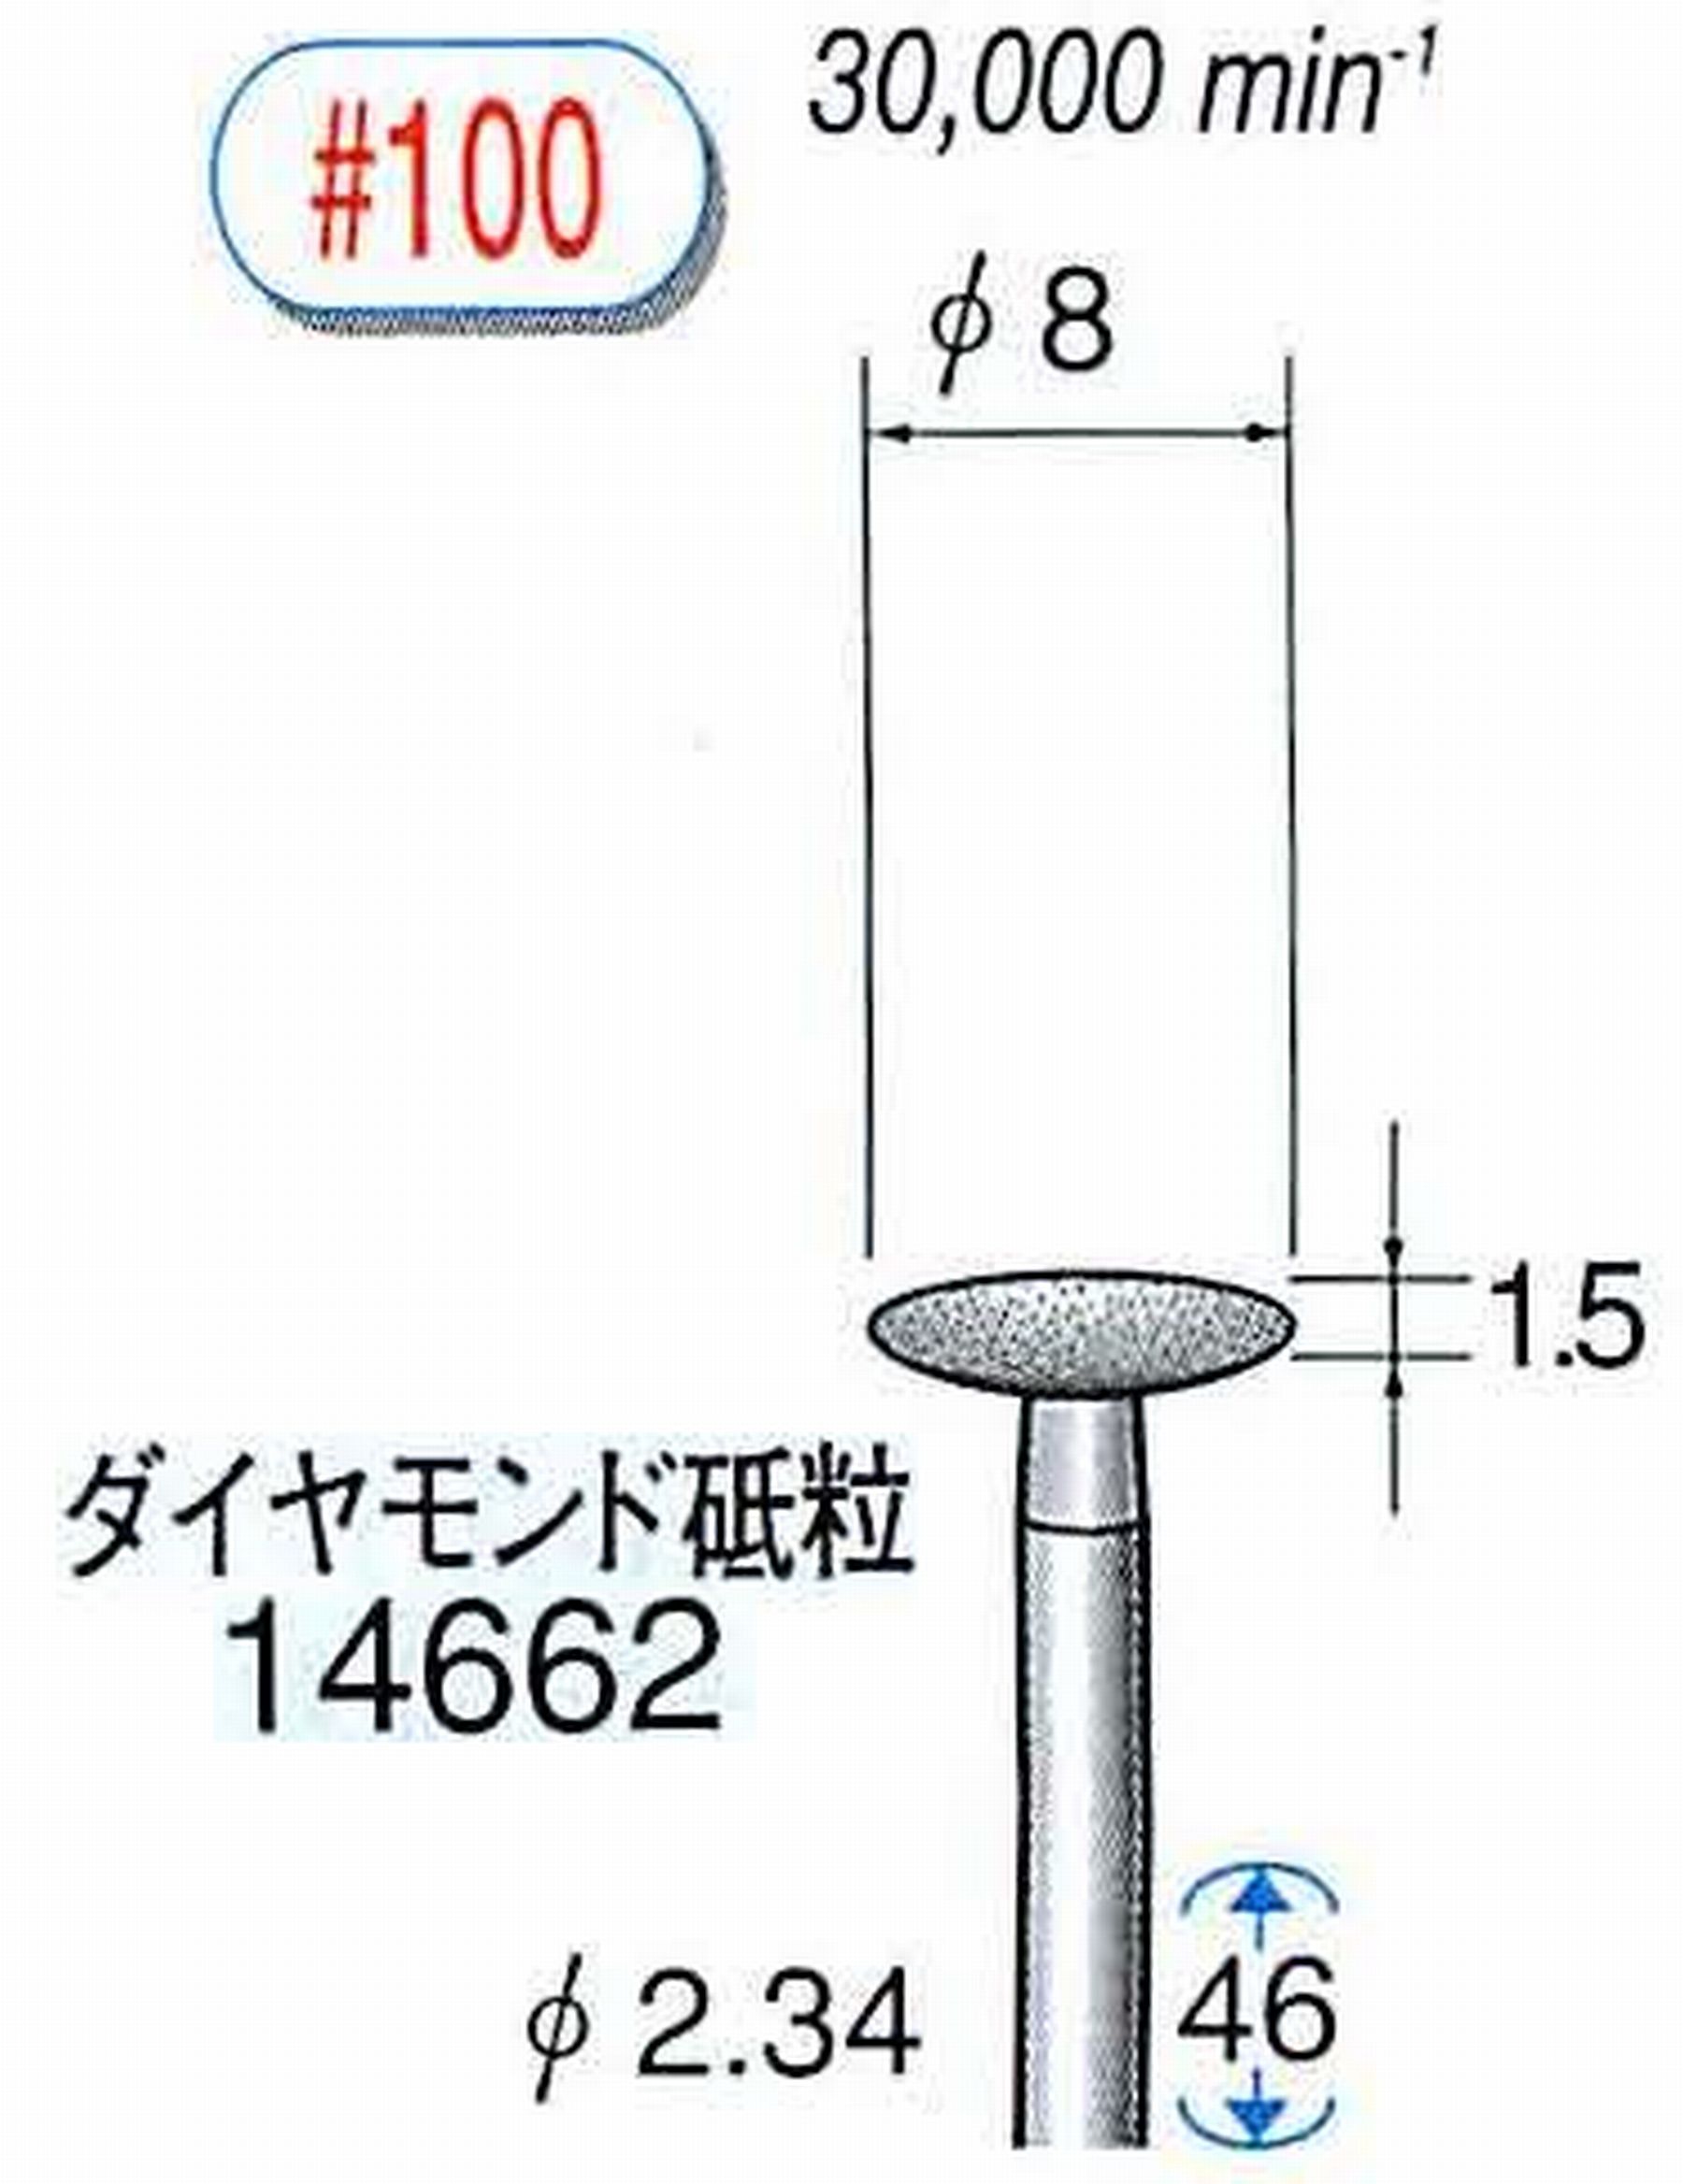 ナカニシ/NAKANISHI ダイヤモンドバー メタルボンドタイプ ダイヤモンド砥粒 軸径(シャンク)φ2.34mm 14662